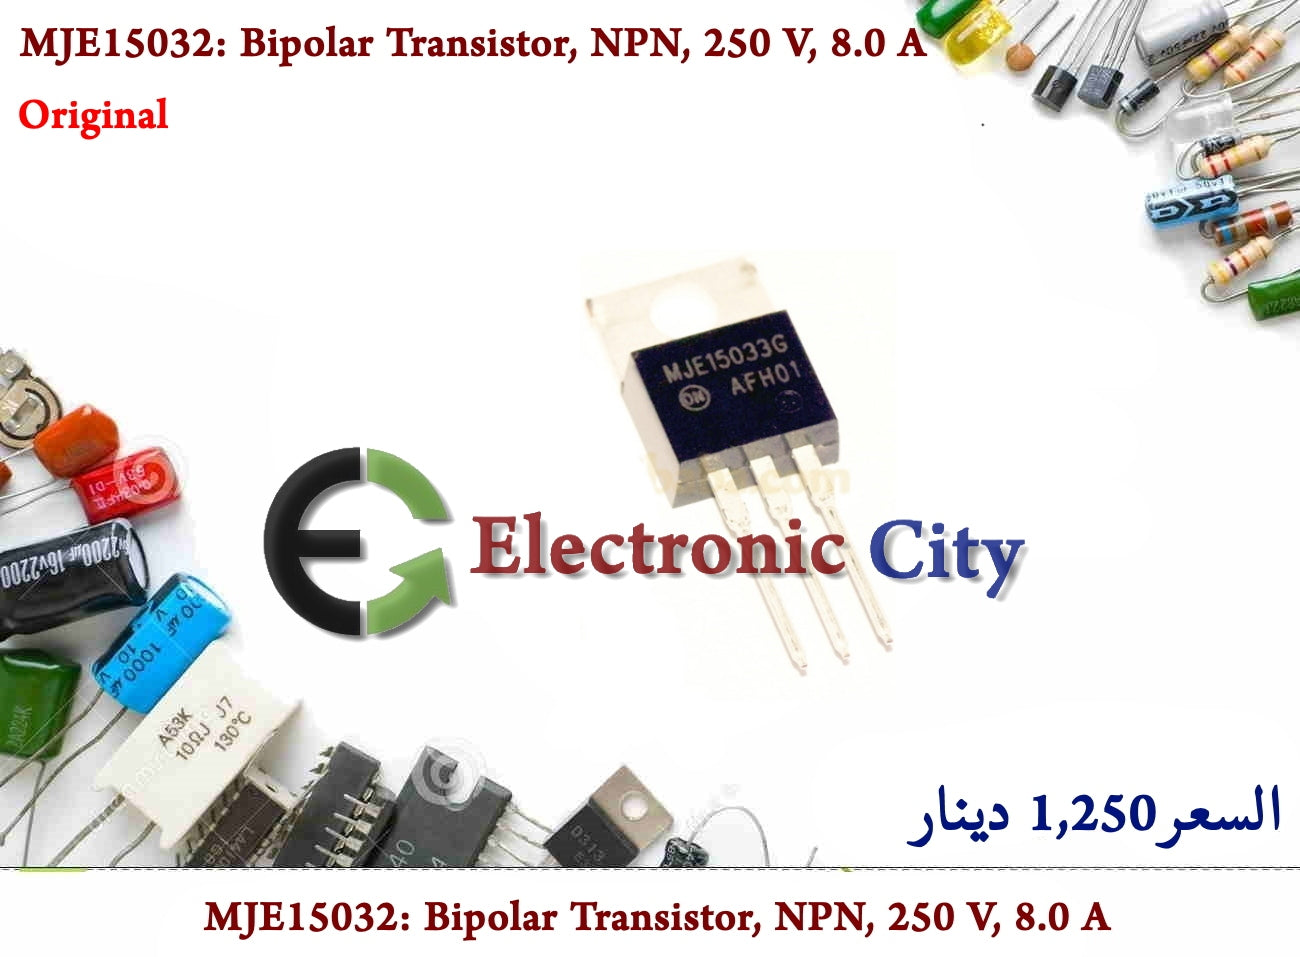 MJE15032 Bipolar Transistor, NPN, 250 V, 8.0 A